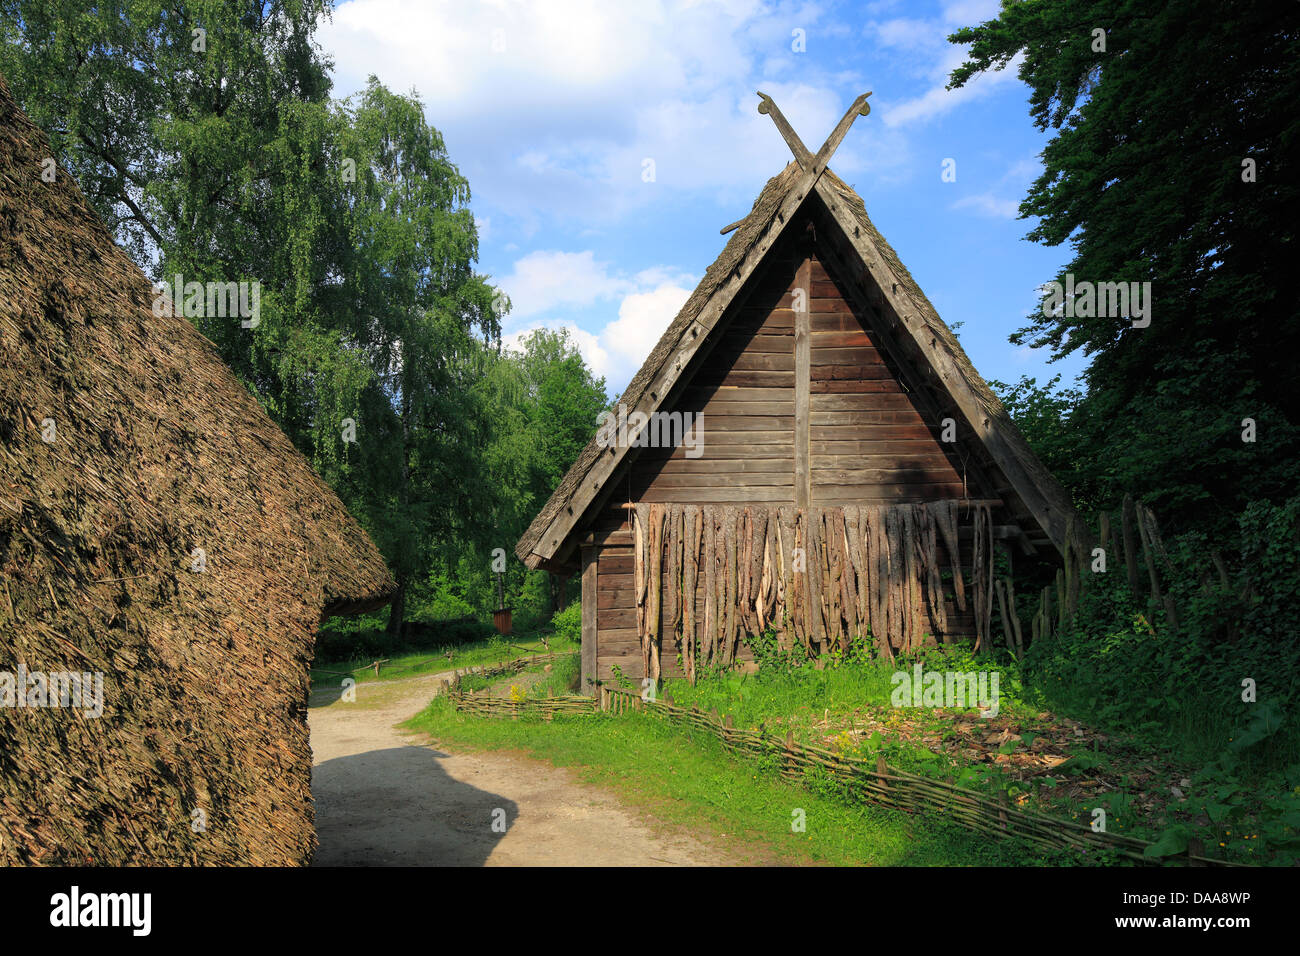 Holzhaus aus der Steinzeit, Archaeologischen Freilichtmuseum in Oerlinghausen, Teutoburger Wald, Nordrhein-Westfalen Stock Photo